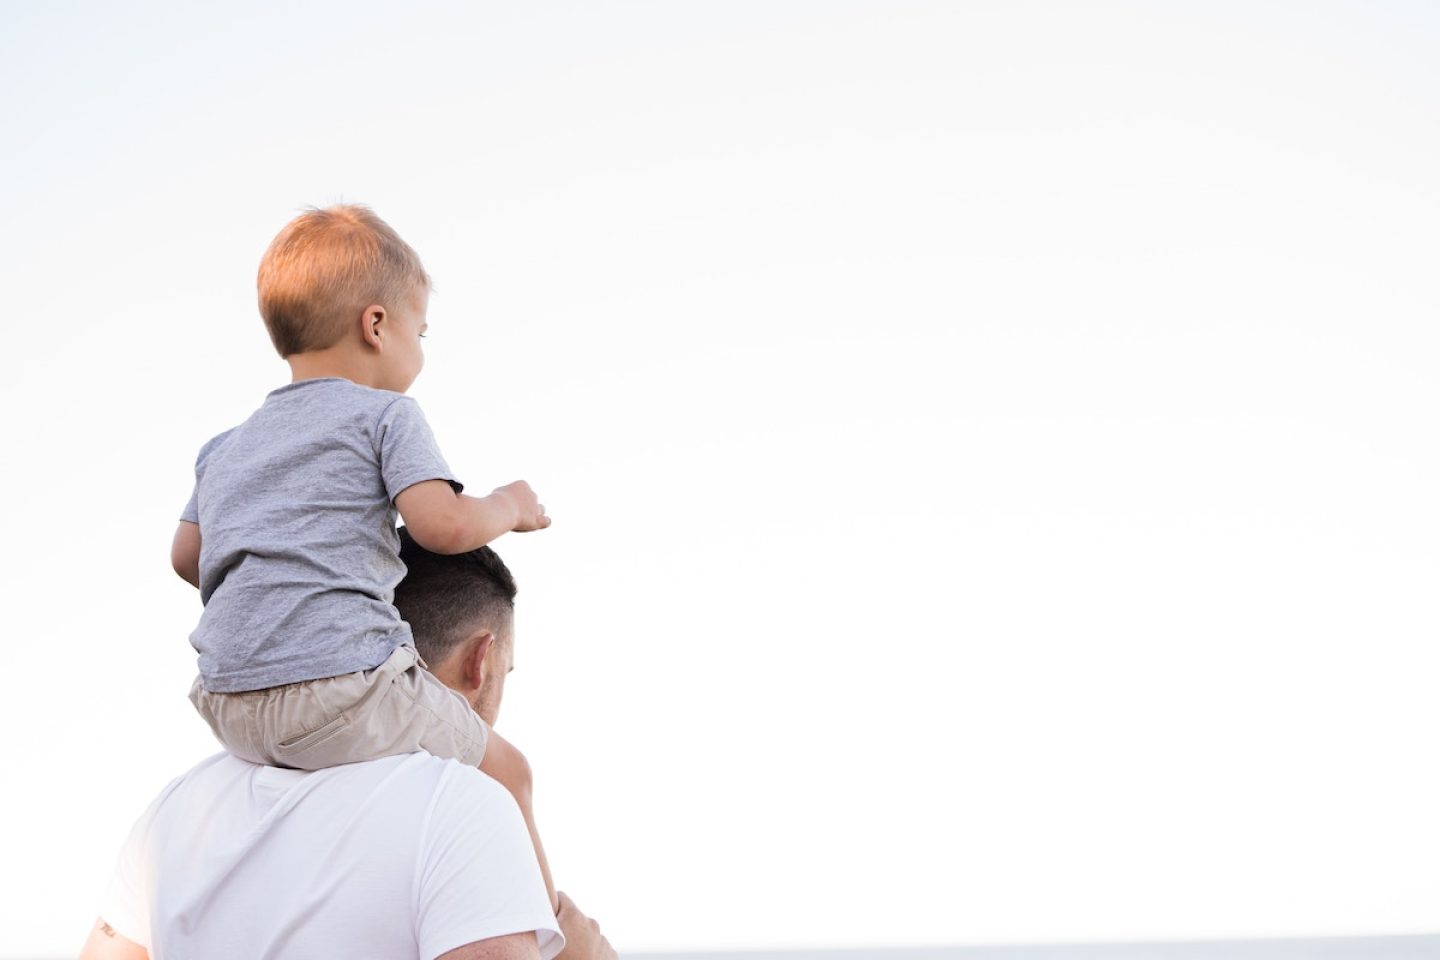 Erstes DAX40-Unternehmen: Henkel führt 8 Wochen bezahlte Elternzeit für Väter ein